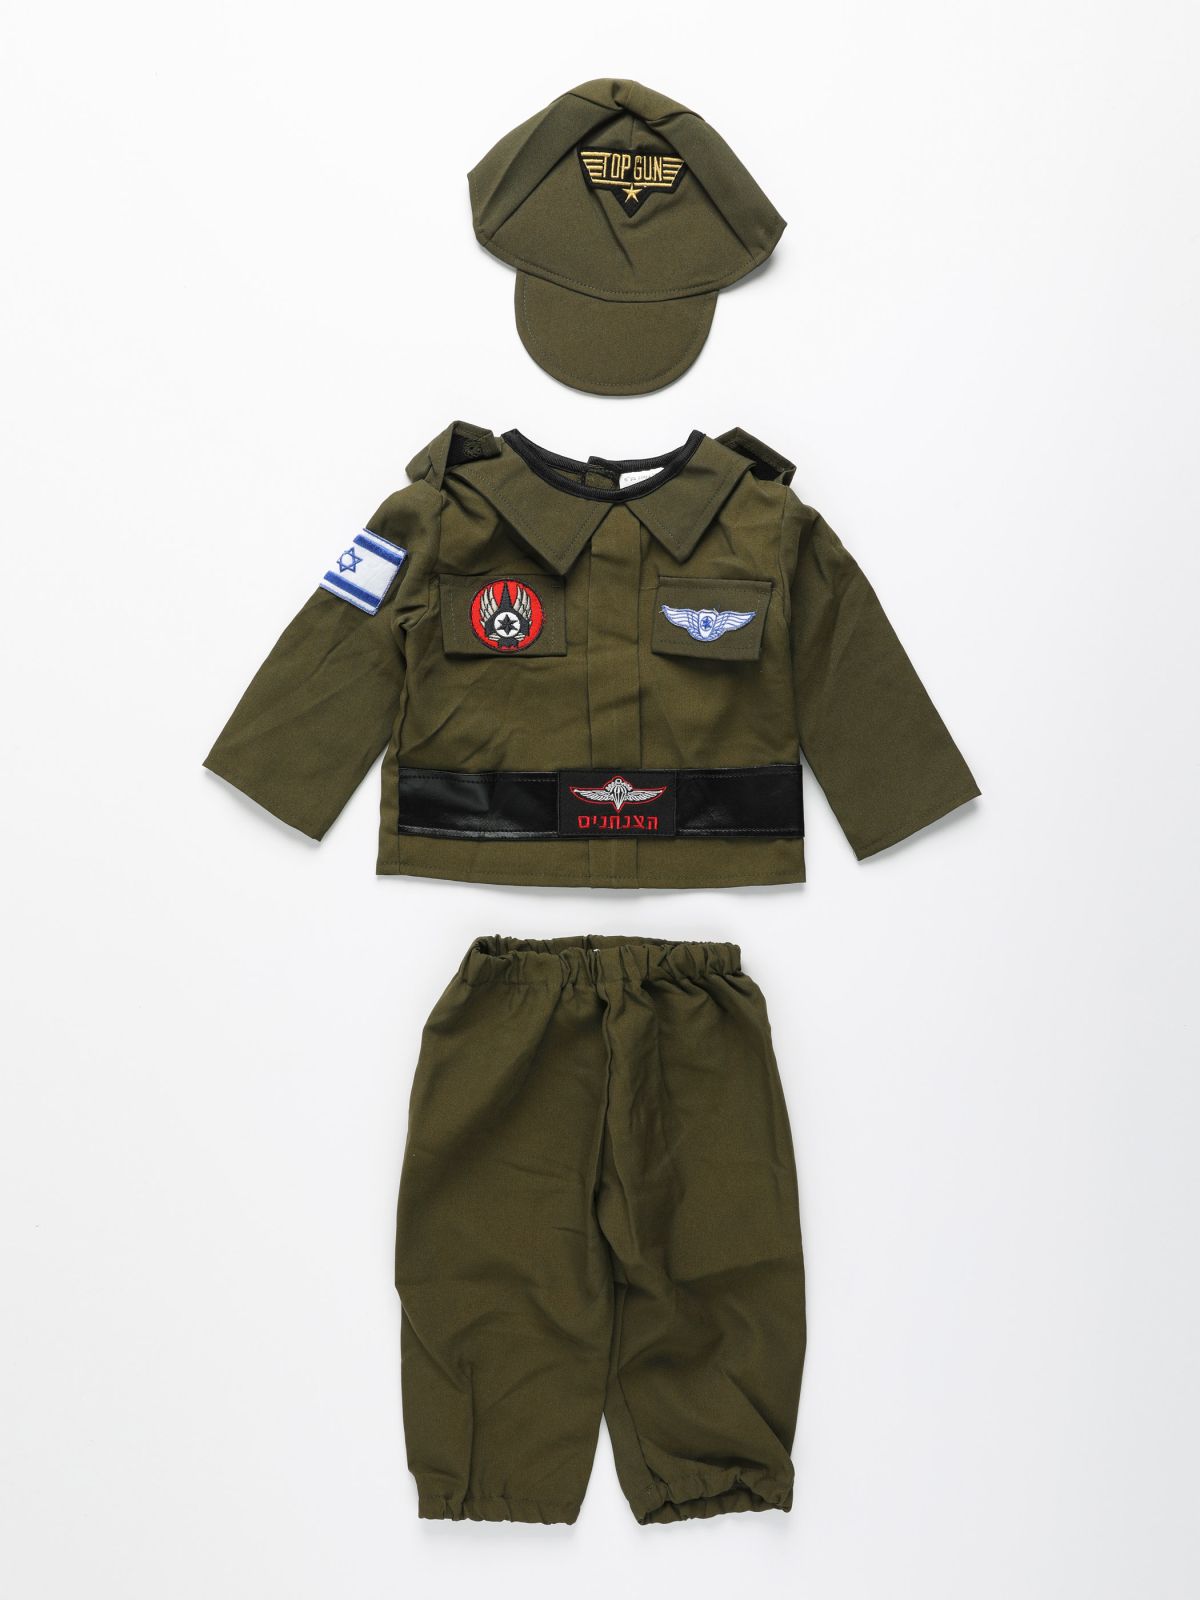  תחפושת חייל לתינוקות / Purim collection של SHOSHI ZOHAR